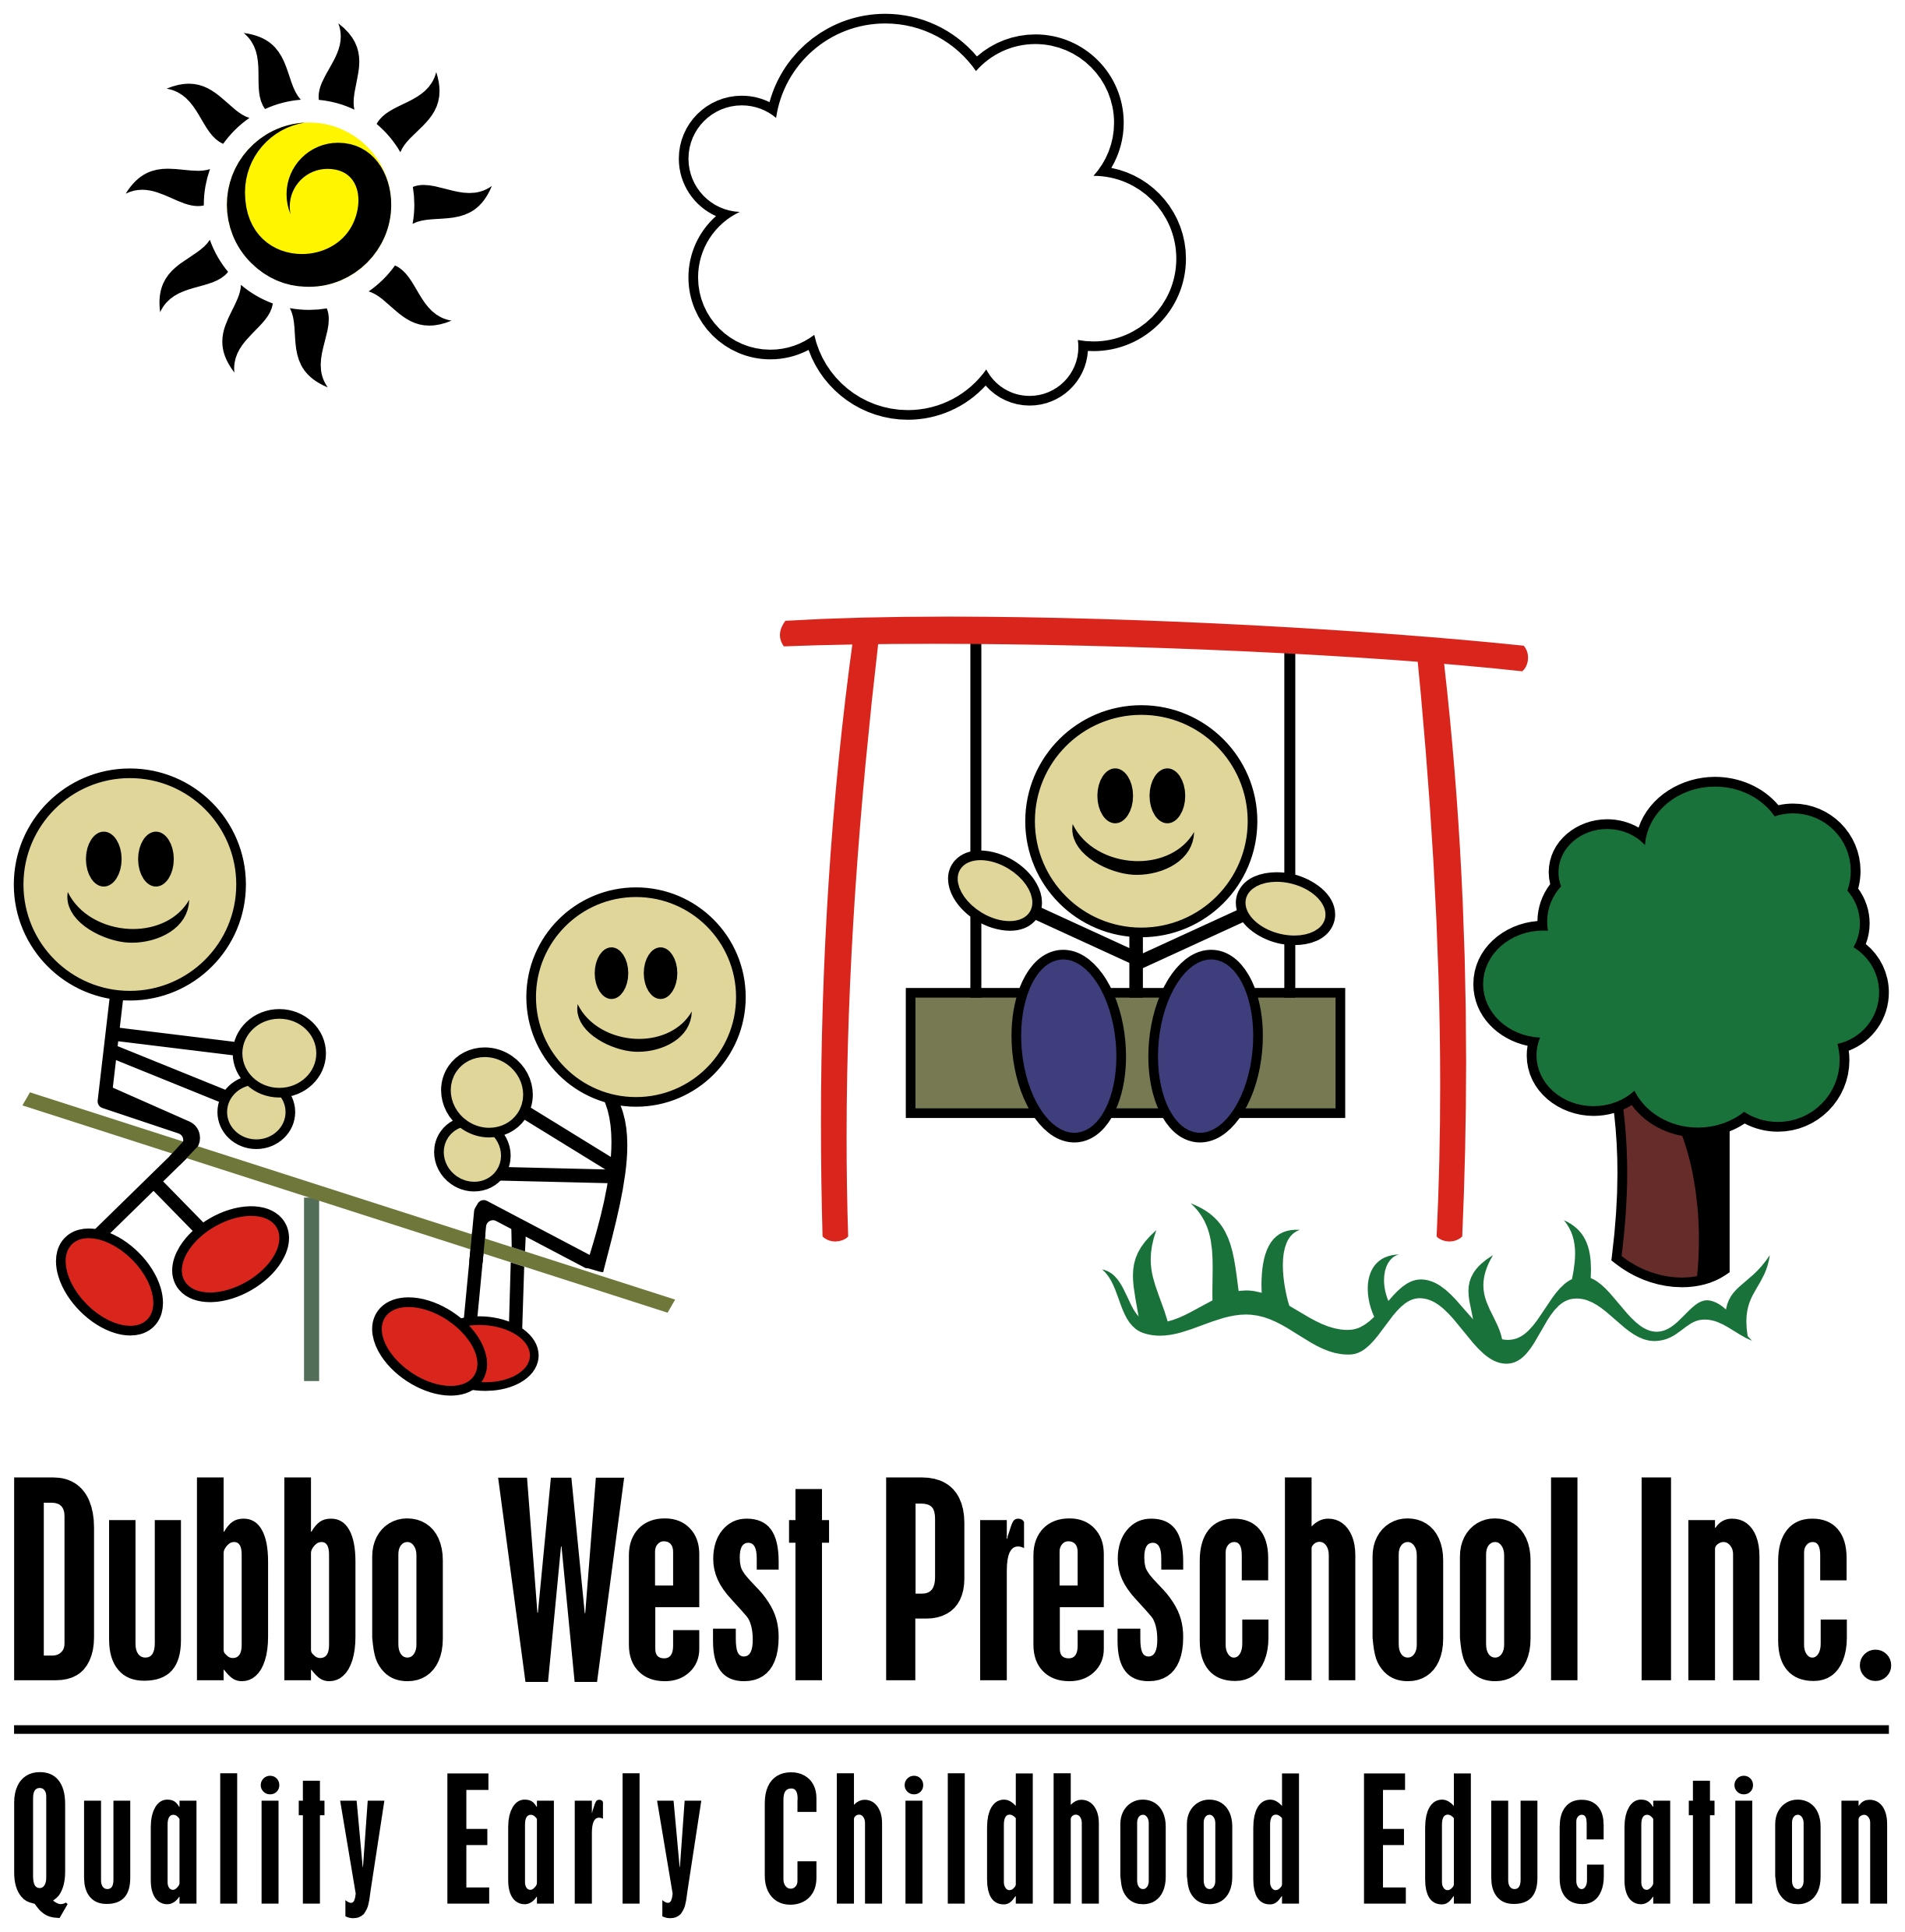 Dubbo West Pre School